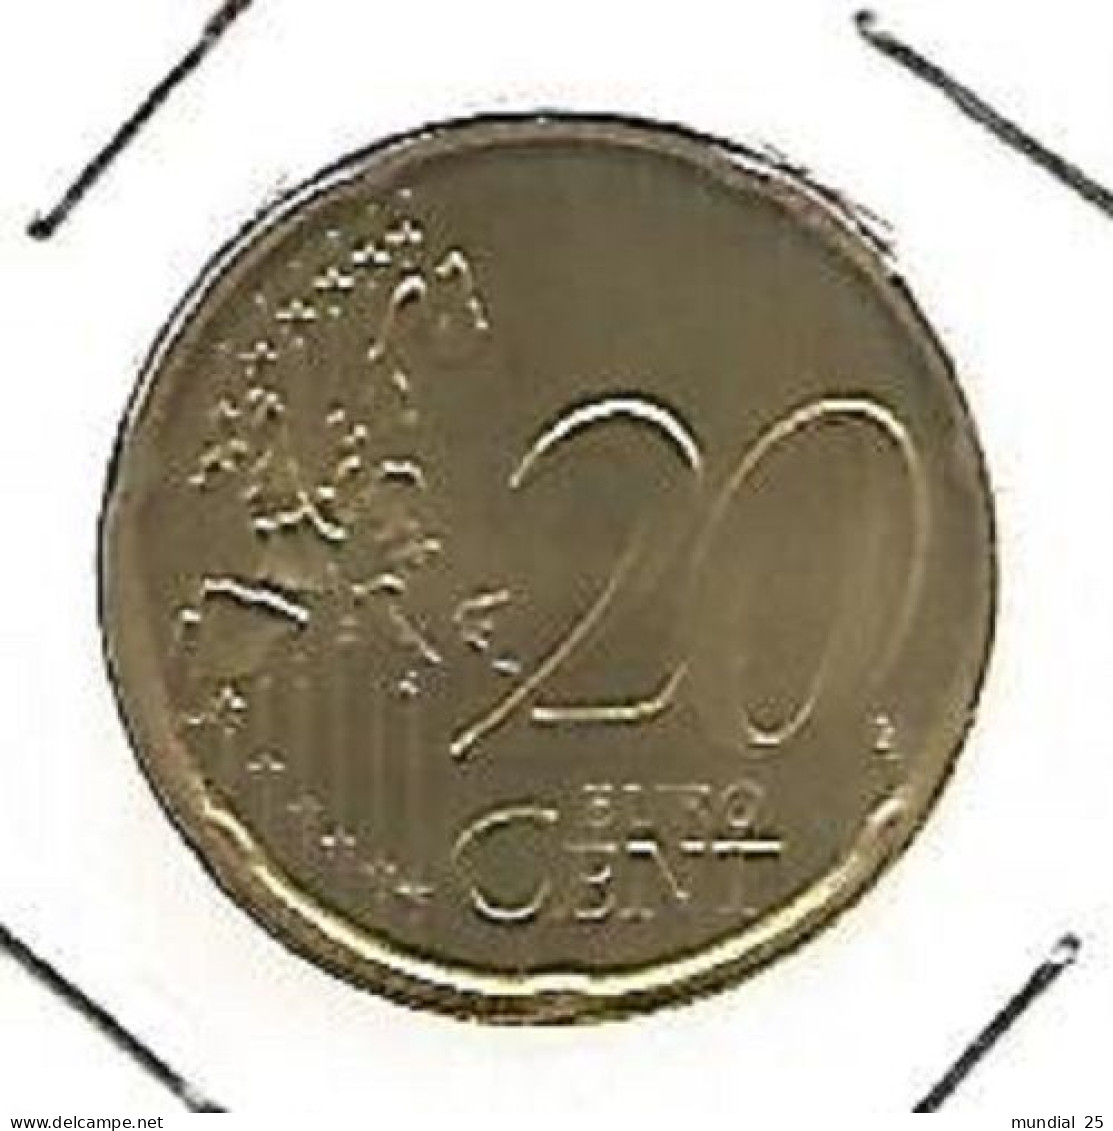 SPAIN 20 EURO CENT 1999 M - Espagne